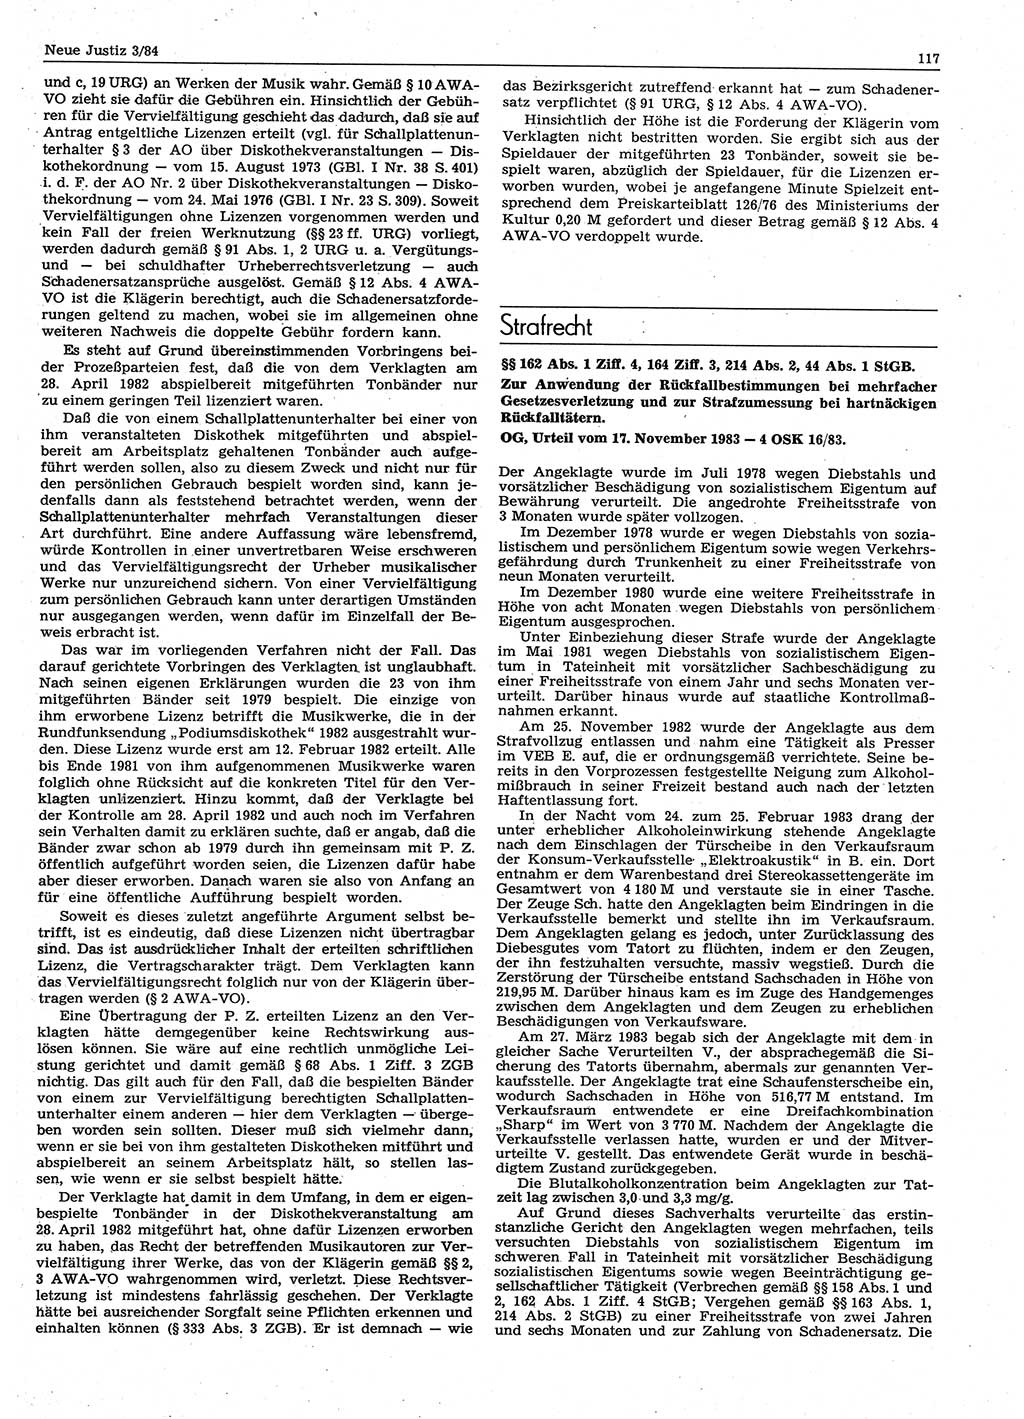 Neue Justiz (NJ), Zeitschrift für sozialistisches Recht und Gesetzlichkeit [Deutsche Demokratische Republik (DDR)], 38. Jahrgang 1984, Seite 117 (NJ DDR 1984, S. 117)